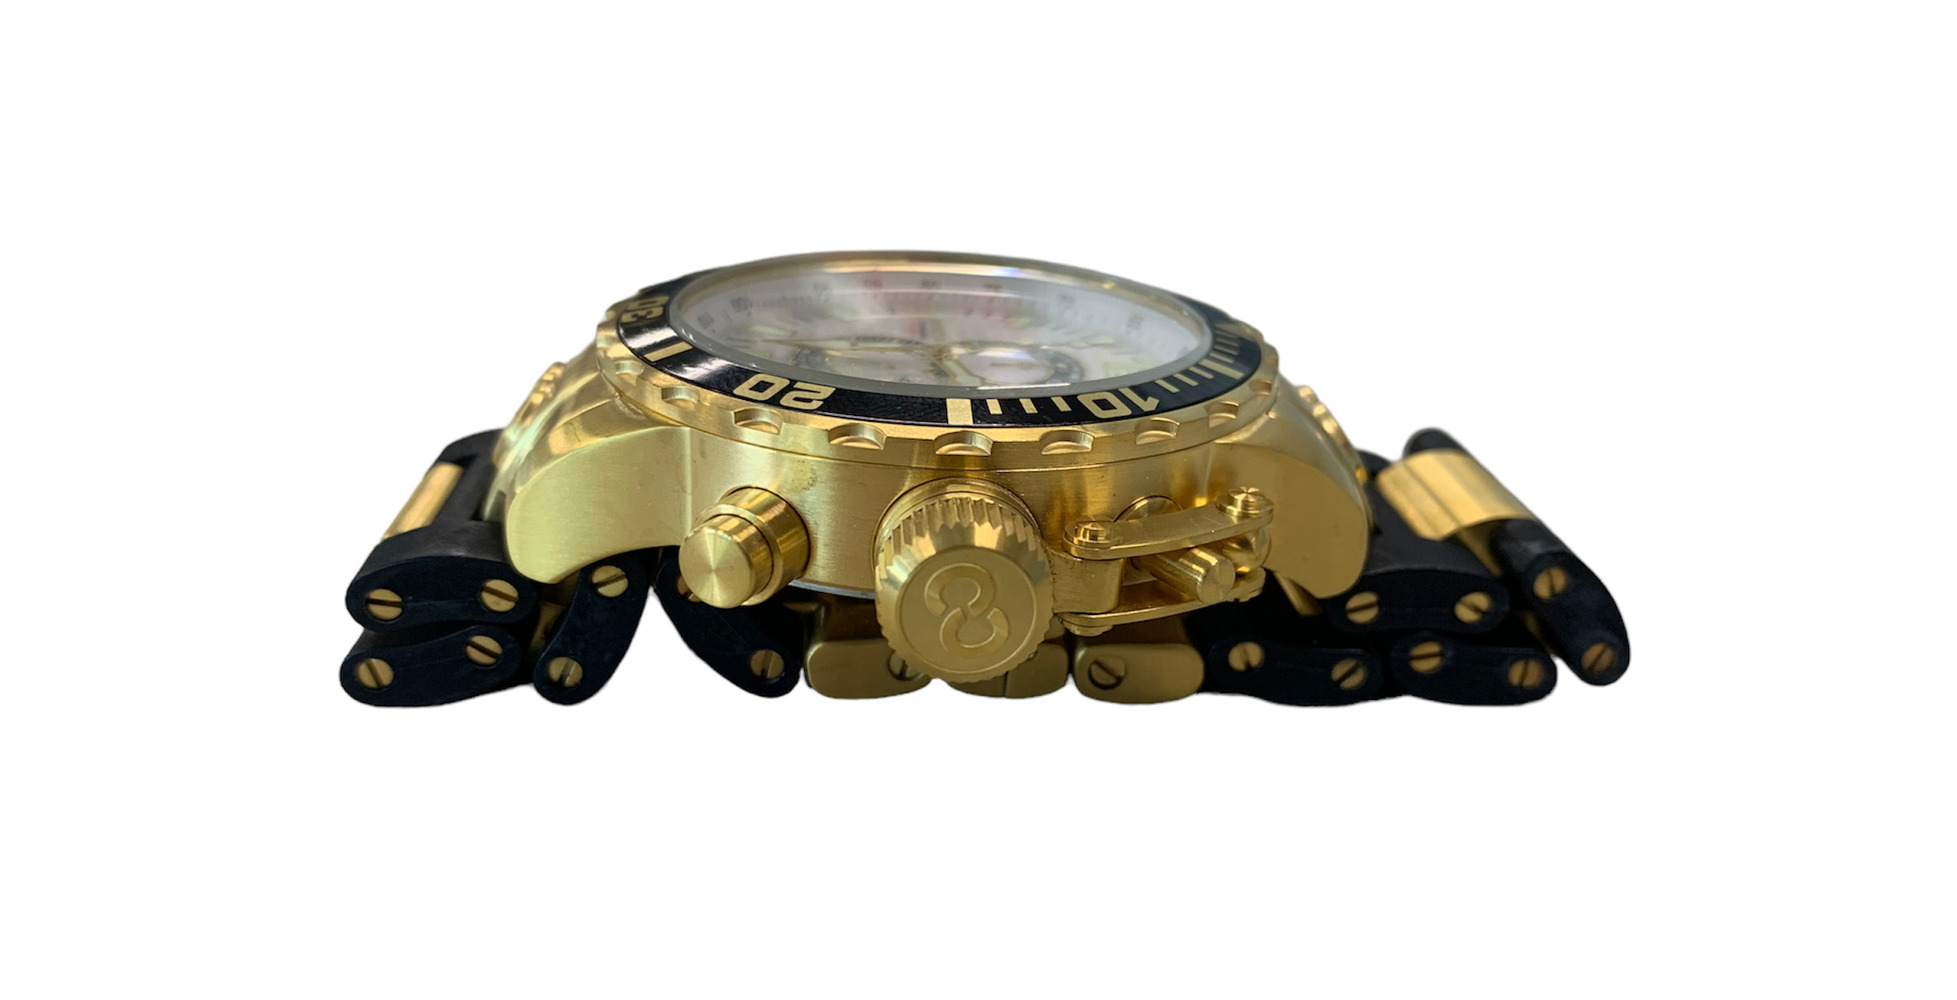 Invicta Corduba Diver Chronograph Men's Watch 4899